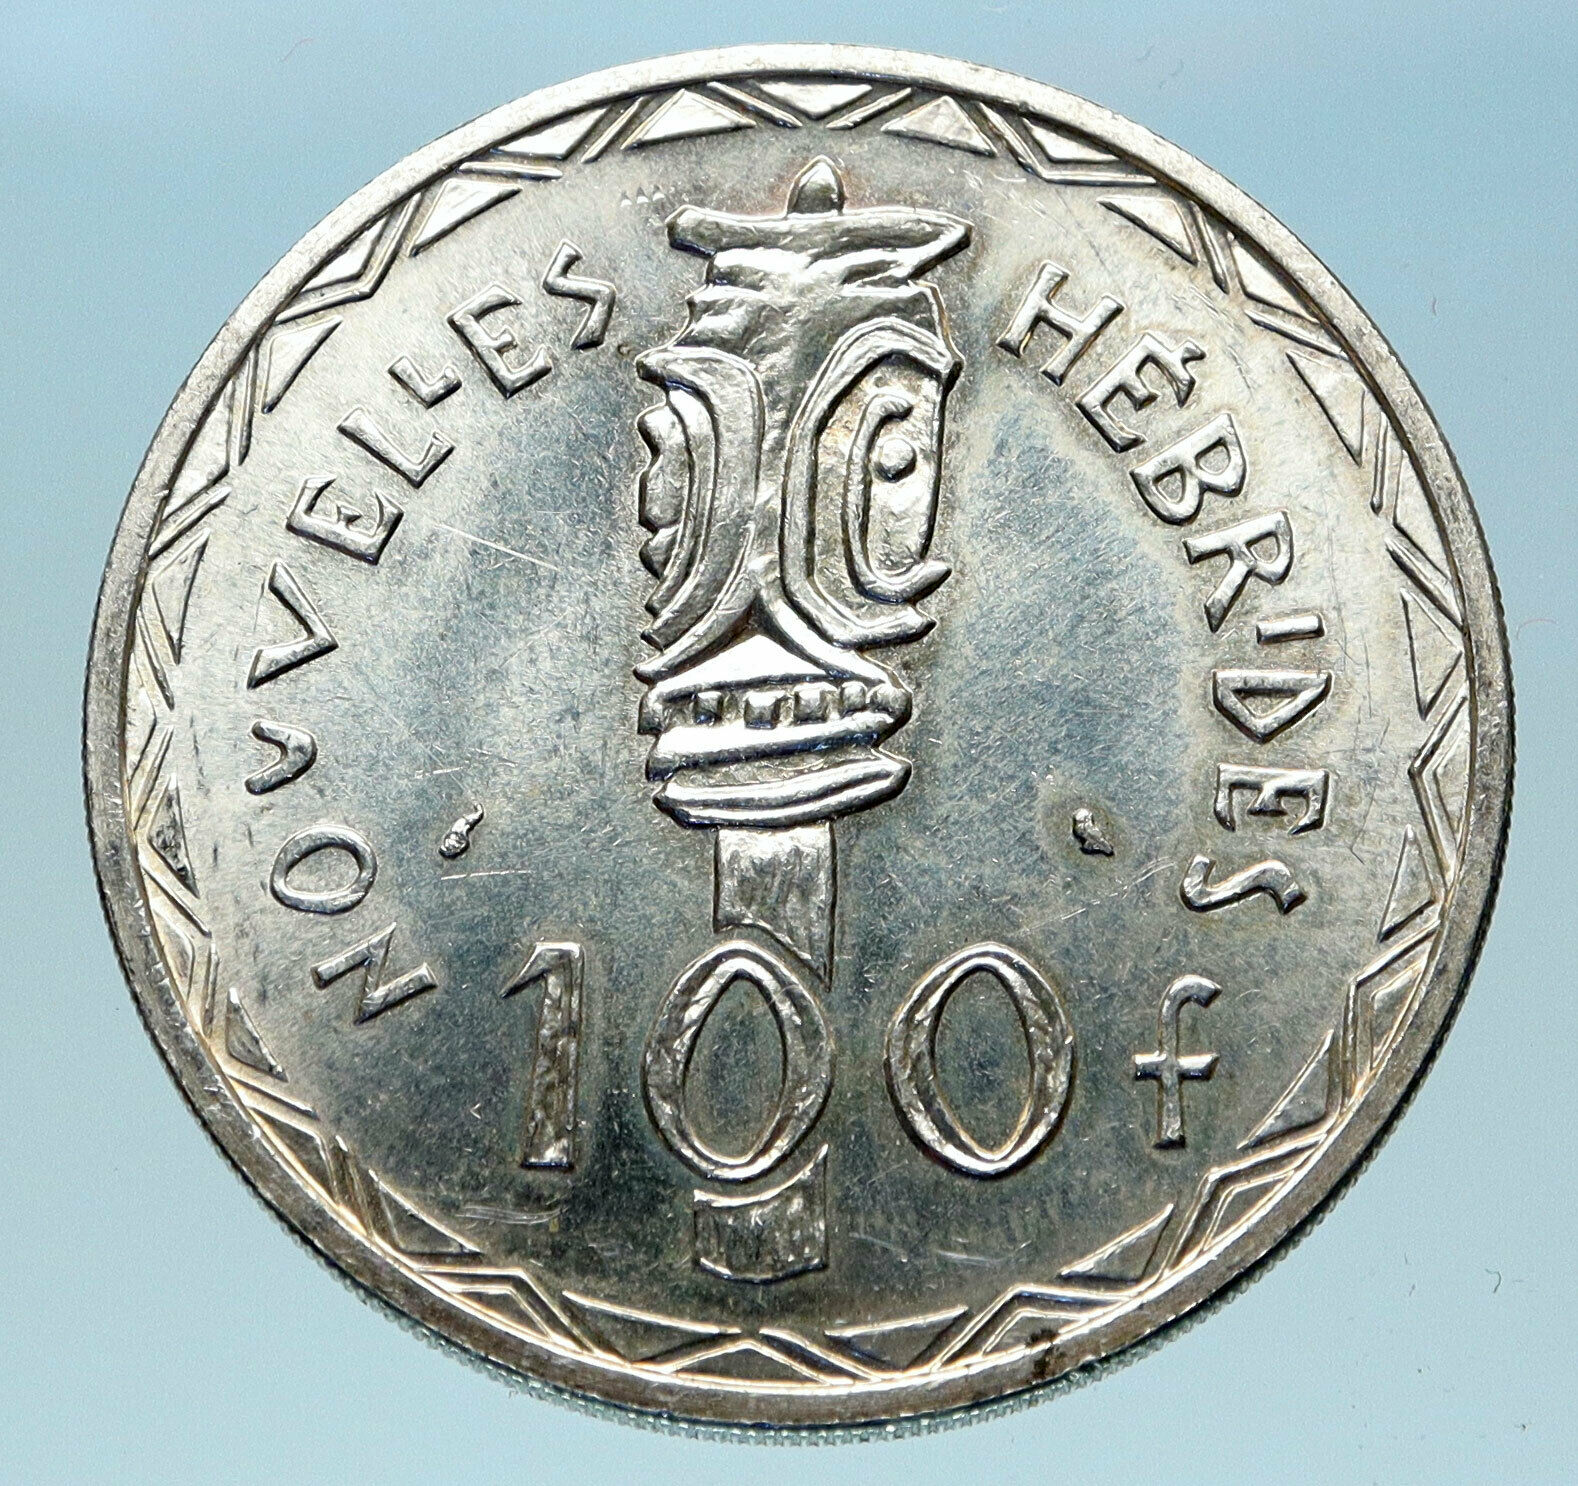 1966 New Hebrides Colony of France 100 Francs Silver BISJ Totem Pole Coin i82983